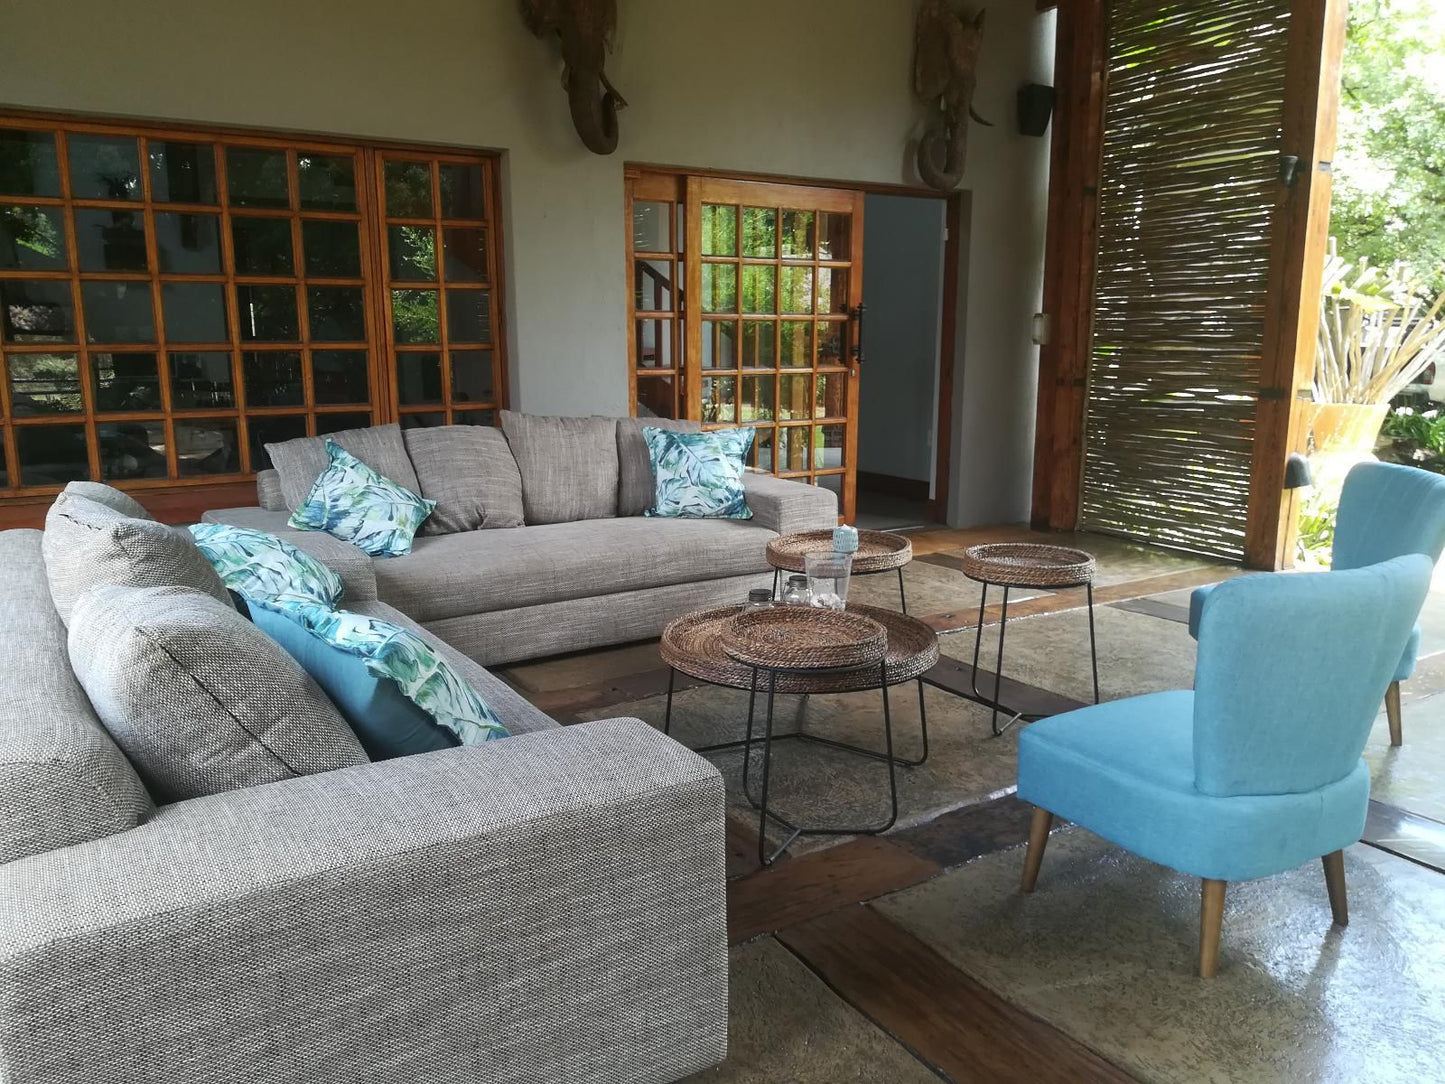 Ikamu S Lodge Verwoerd Park Johannesburg Gauteng South Africa Living Room